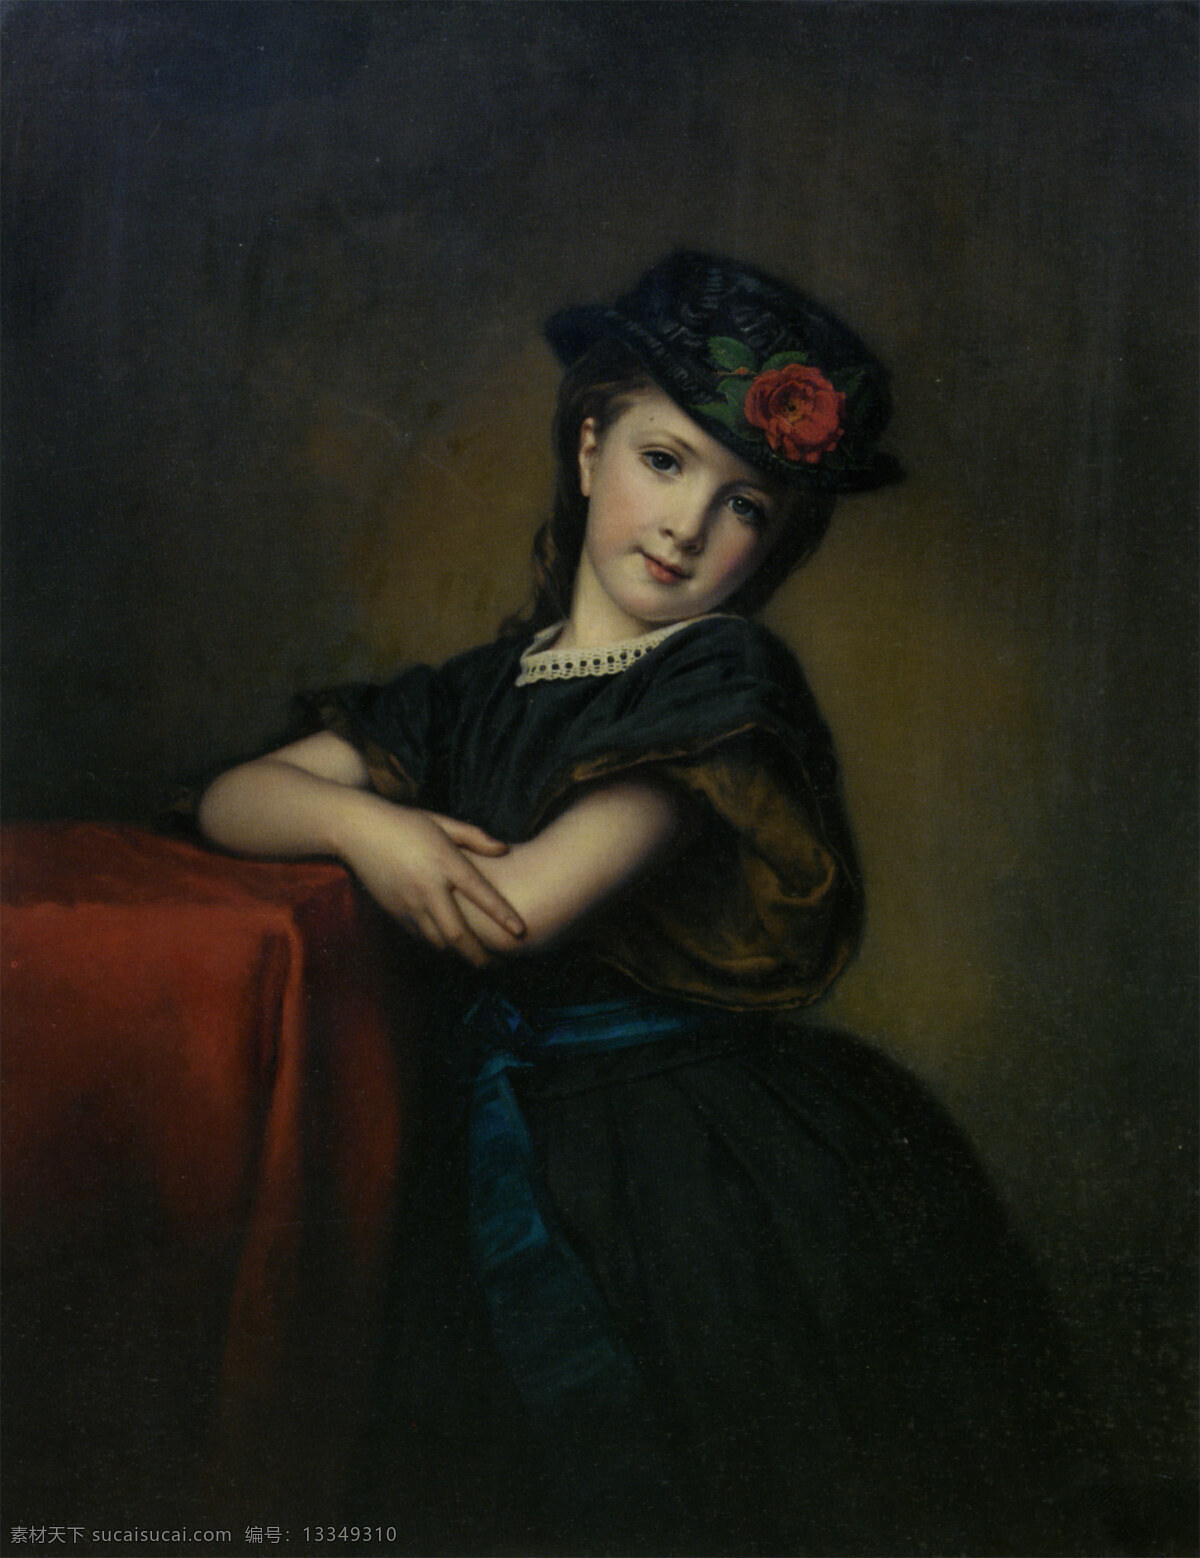 可爱的小女孩 小女孩 帽子 肖像 古典 西洋画 世界名画 绘画书法 文化艺术